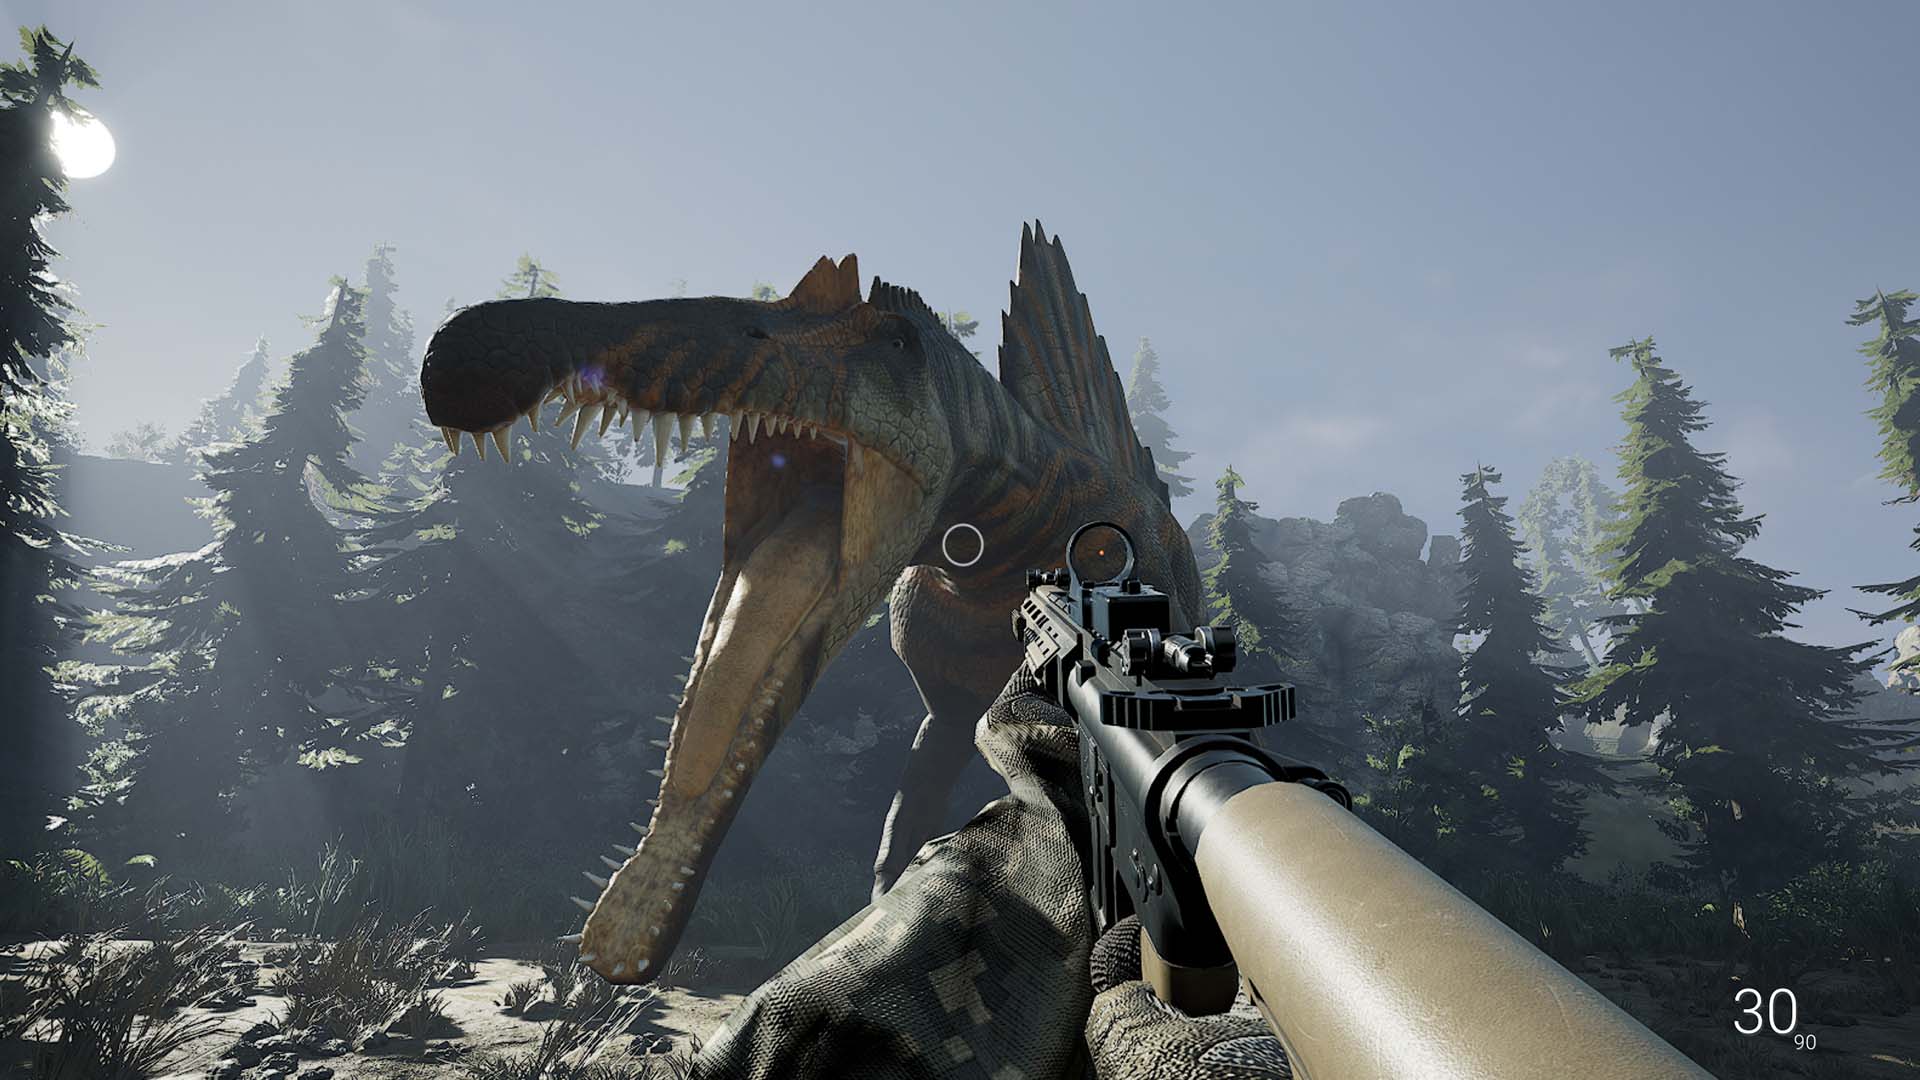 Dinosaur Survival Horror Makes its Grand Return in Fossilfuel 2